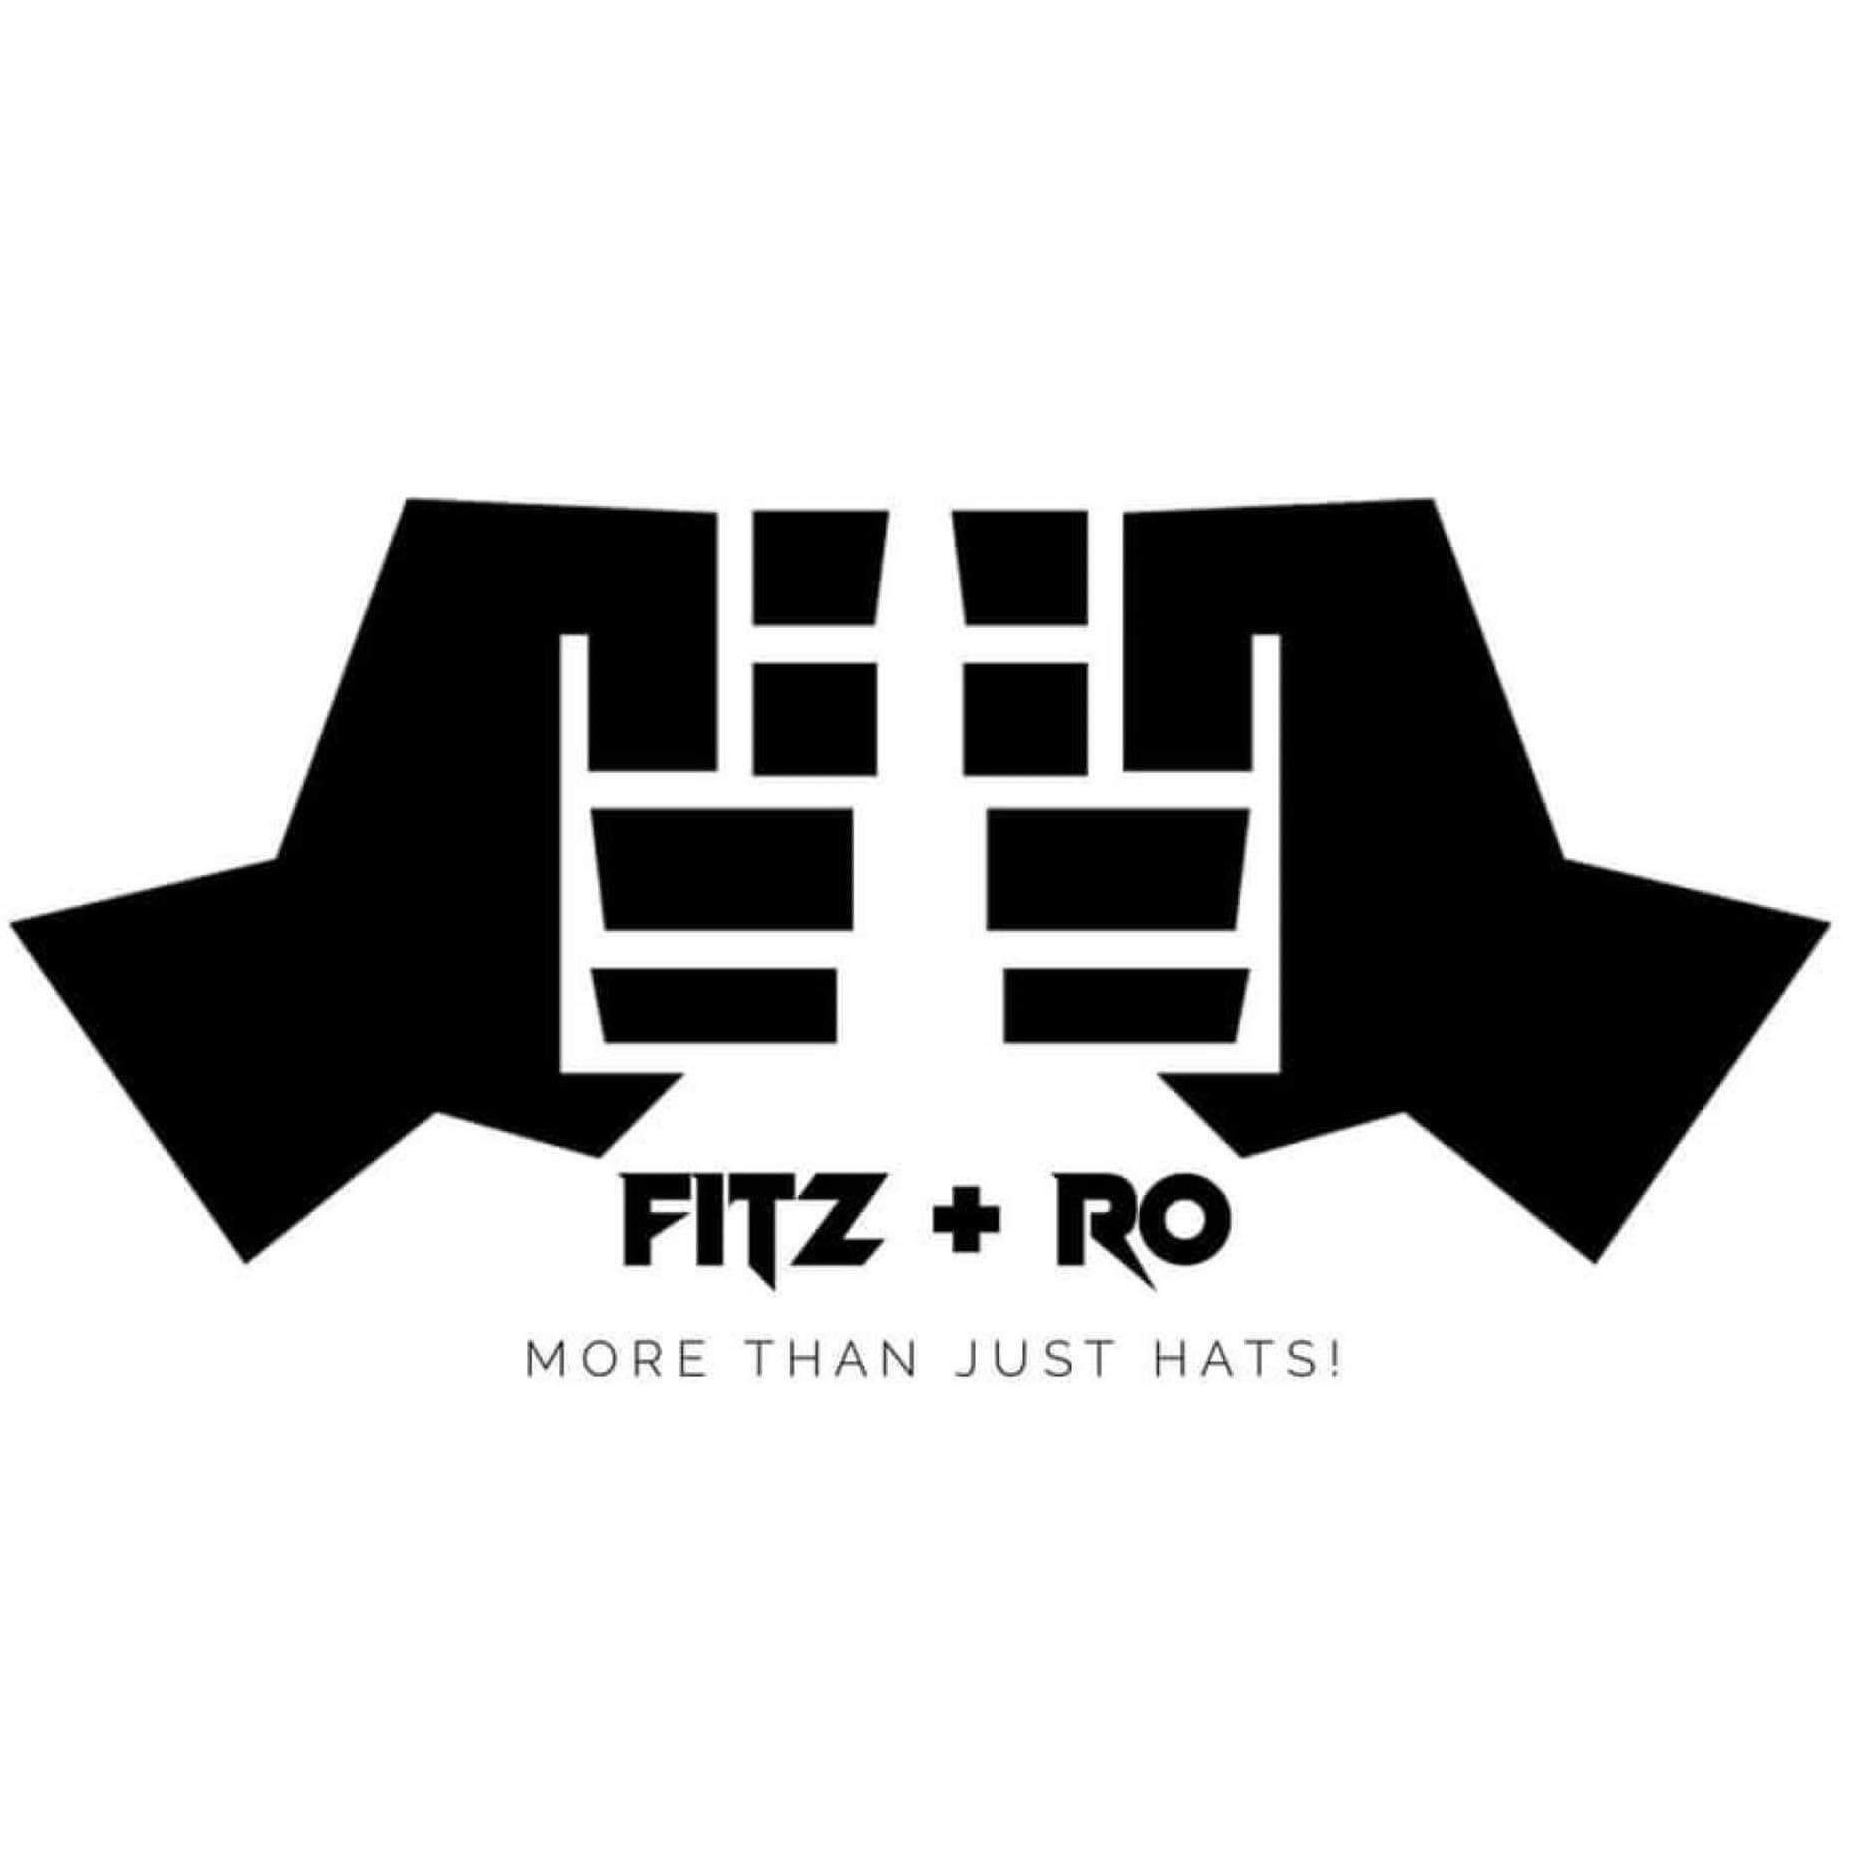 Fitz + Ro